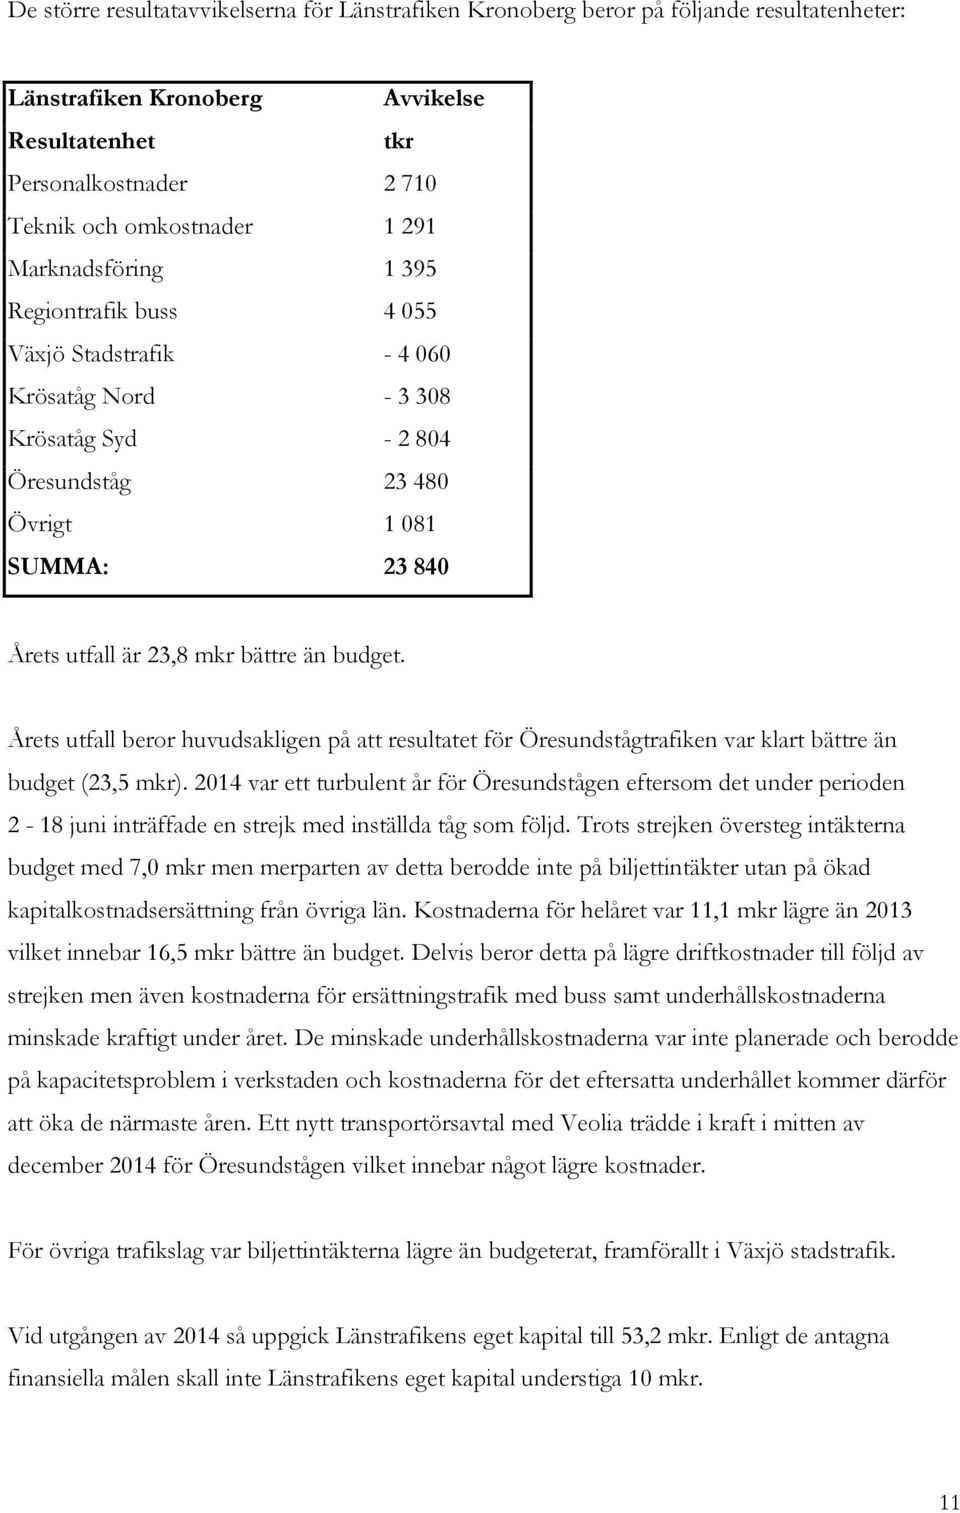 budget. Årets utfall beror huvudsakligen på att resultatet för Öresundstågtrafiken var klart bättre än budget (23,5 mkr).